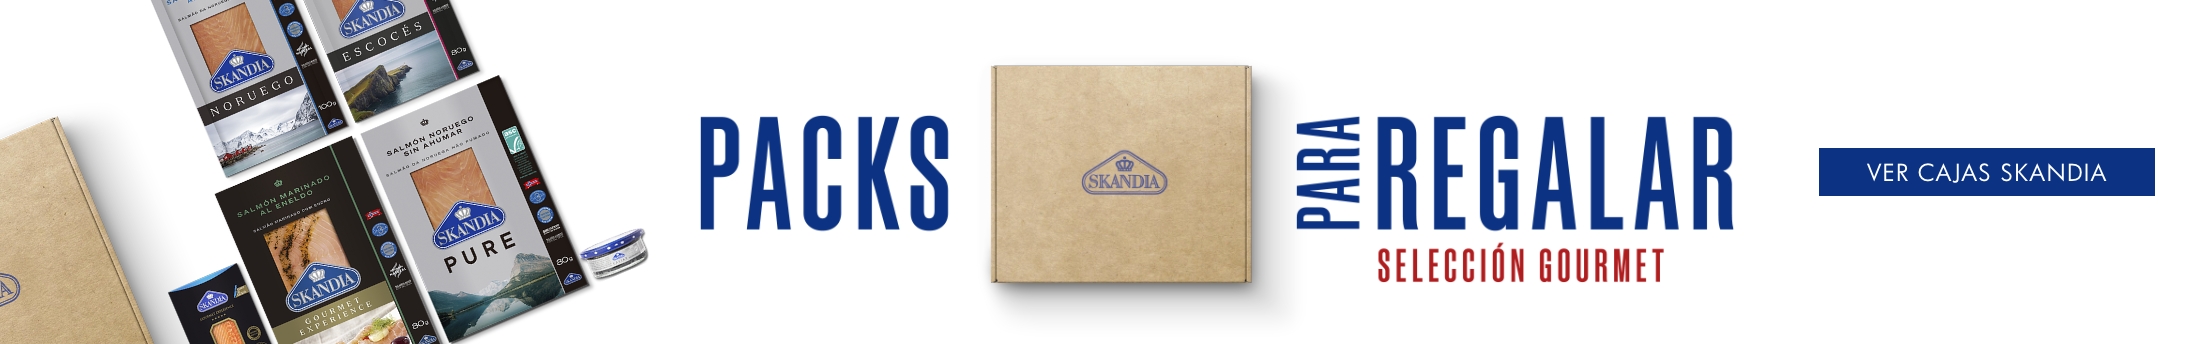 cajas especiales con productos ahumados skandia